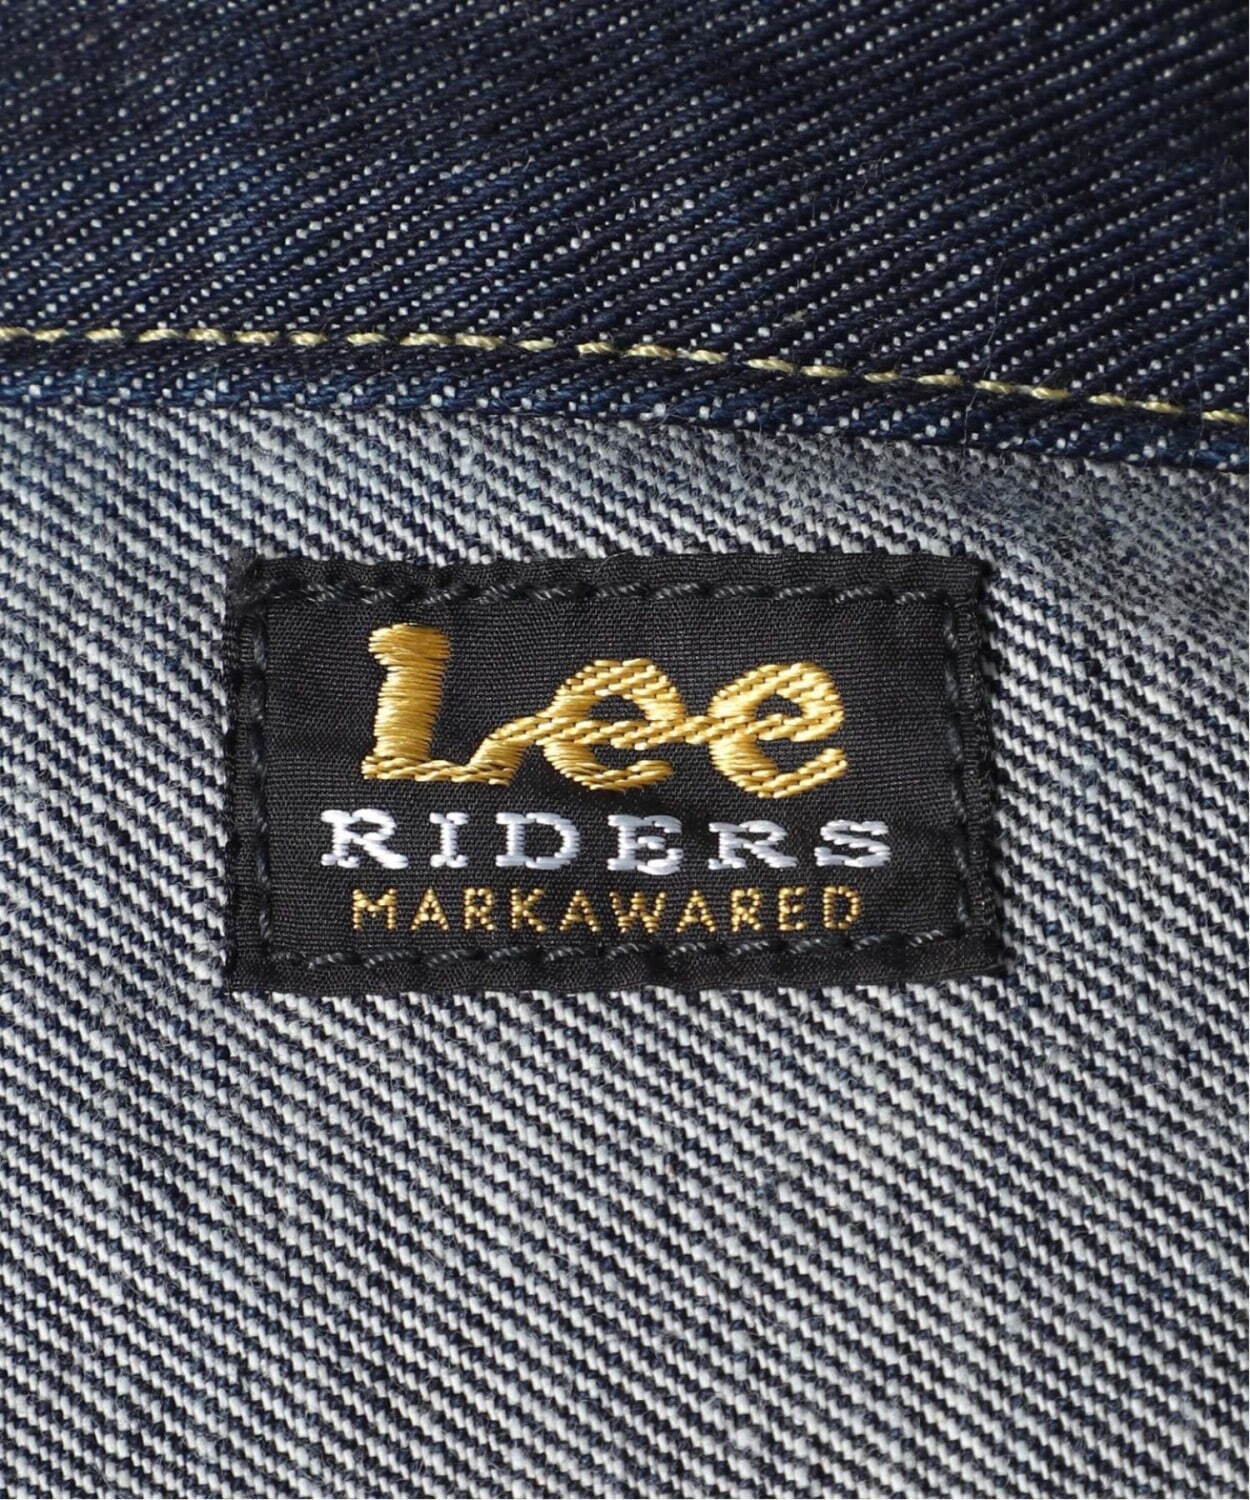 Leeの名品デニムジャケット「101J」オーバーサイズに、マーカウェア